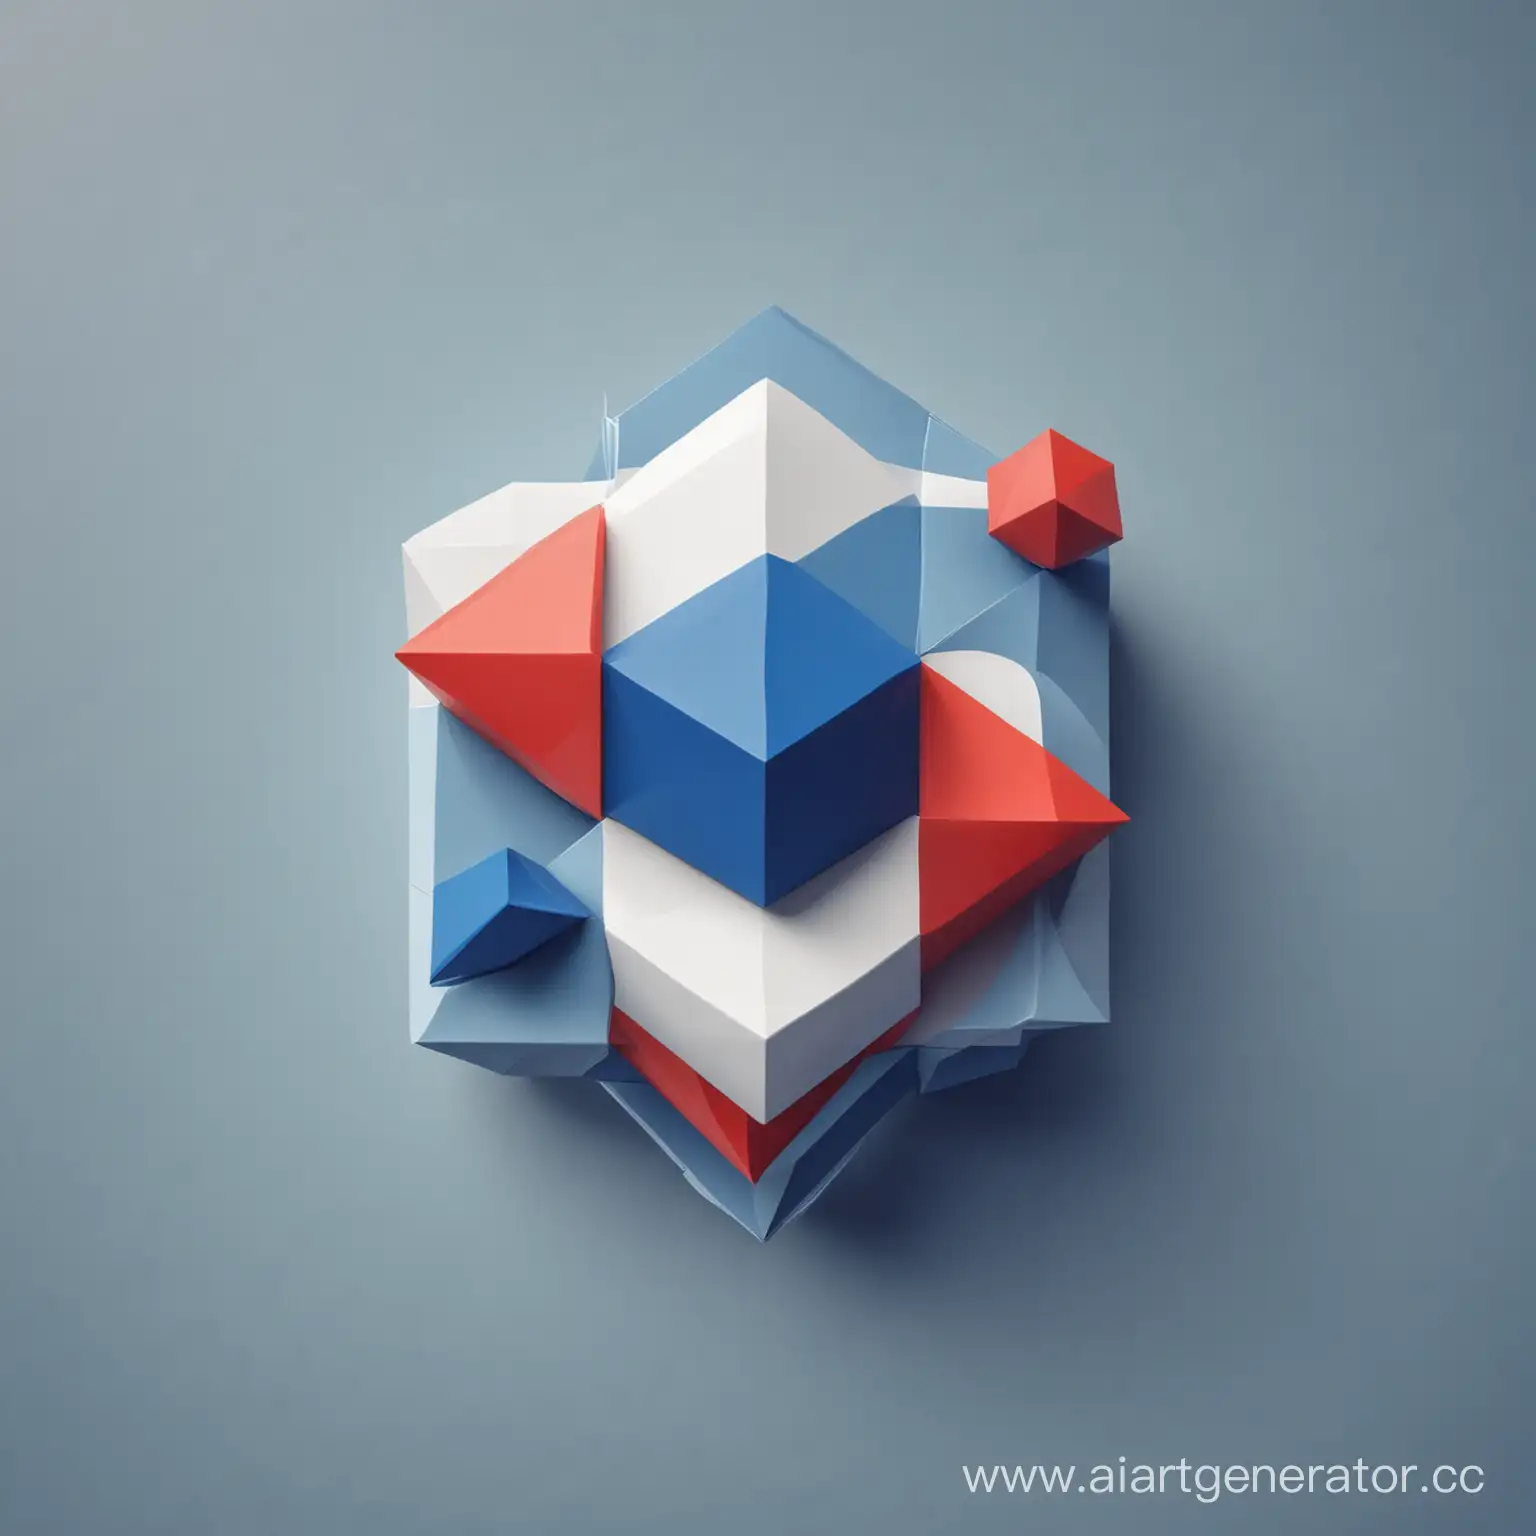 картинка из геометрических фигур в теме программирования синий белый и красный